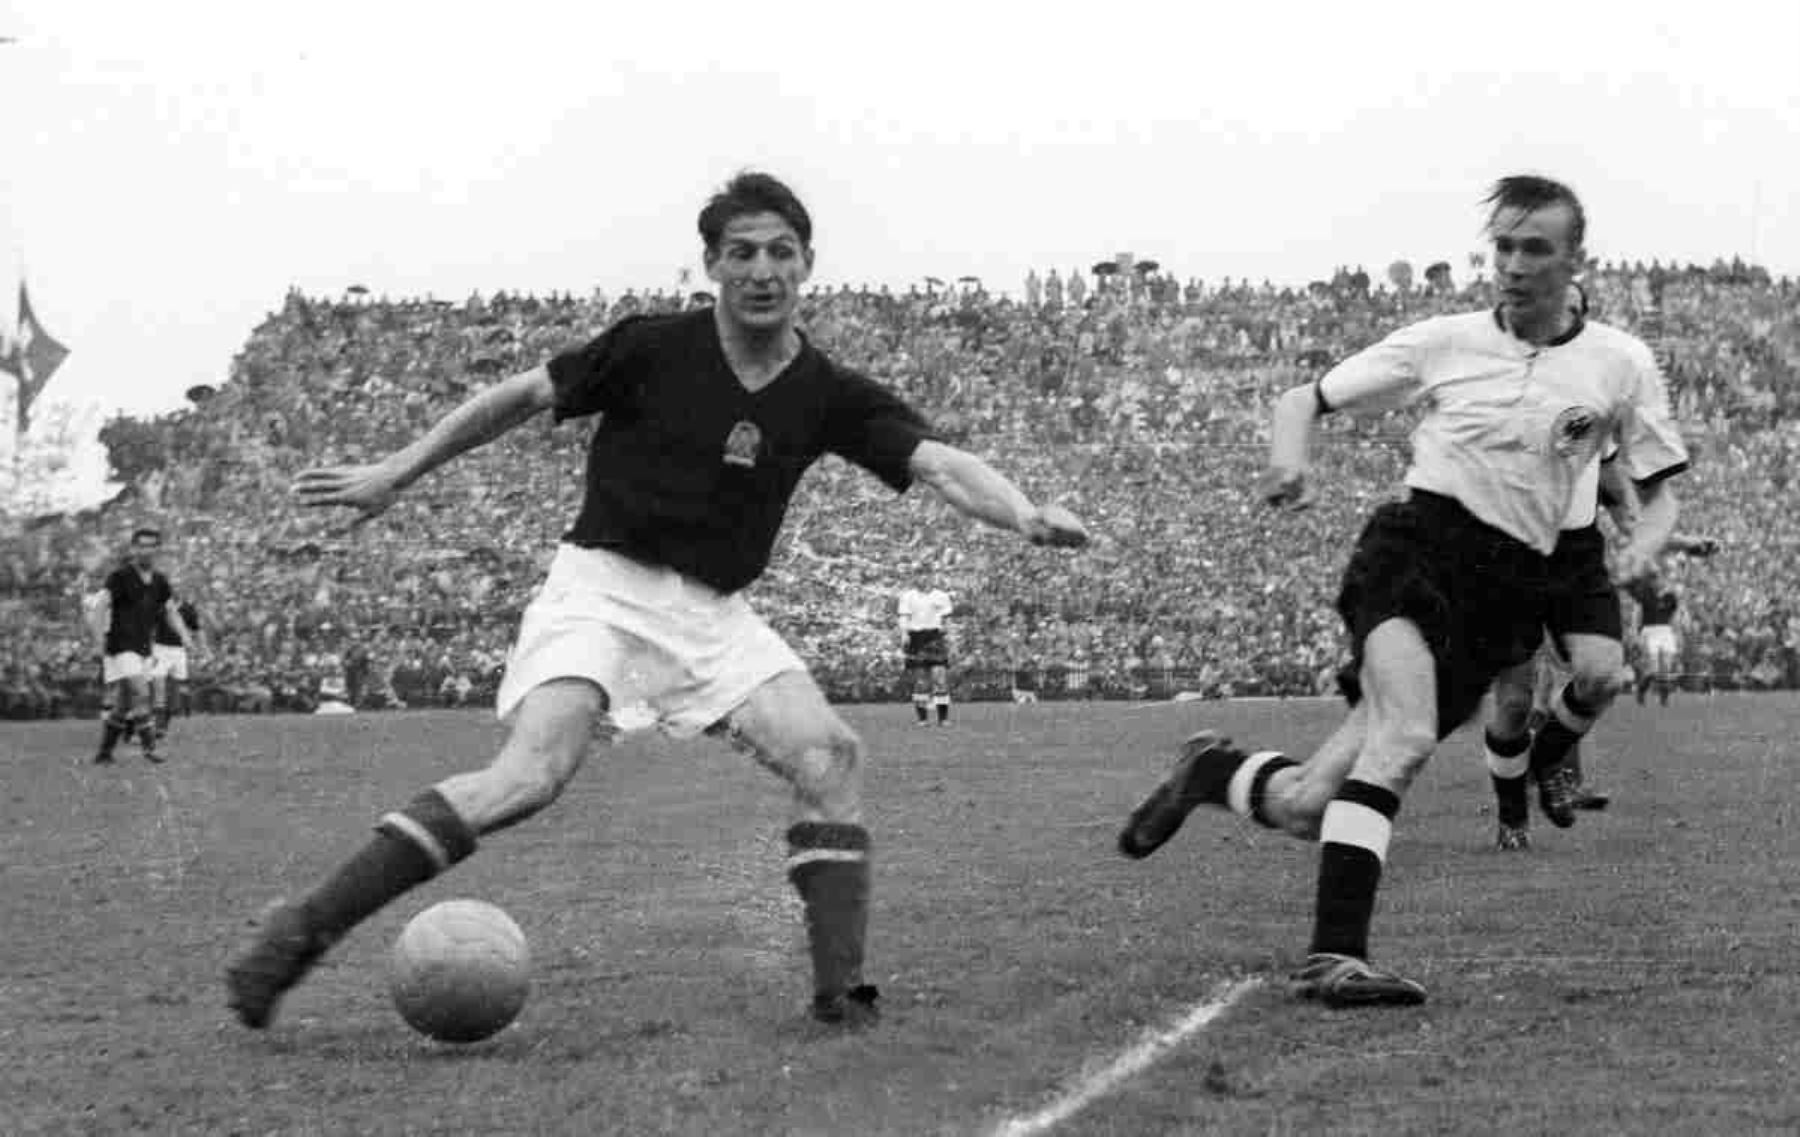 Sándor Kocsis – Hungría. 11 goles en 5 partidos. Participó en el mundial de 1954. Foto: ANDINA/archivo